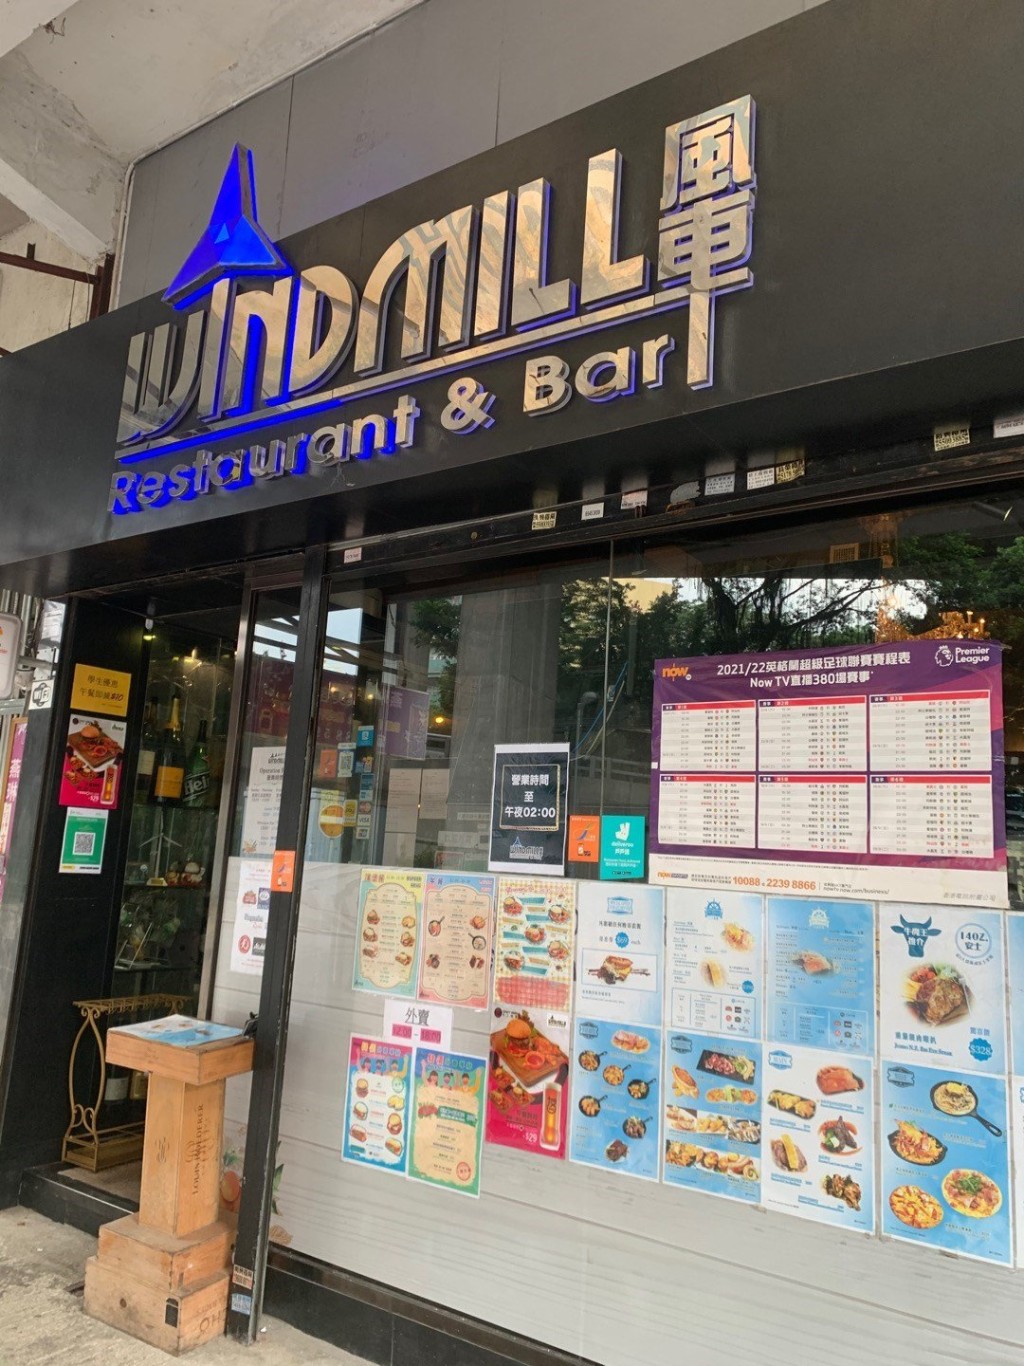 風車Windmill Restaurant & Bar